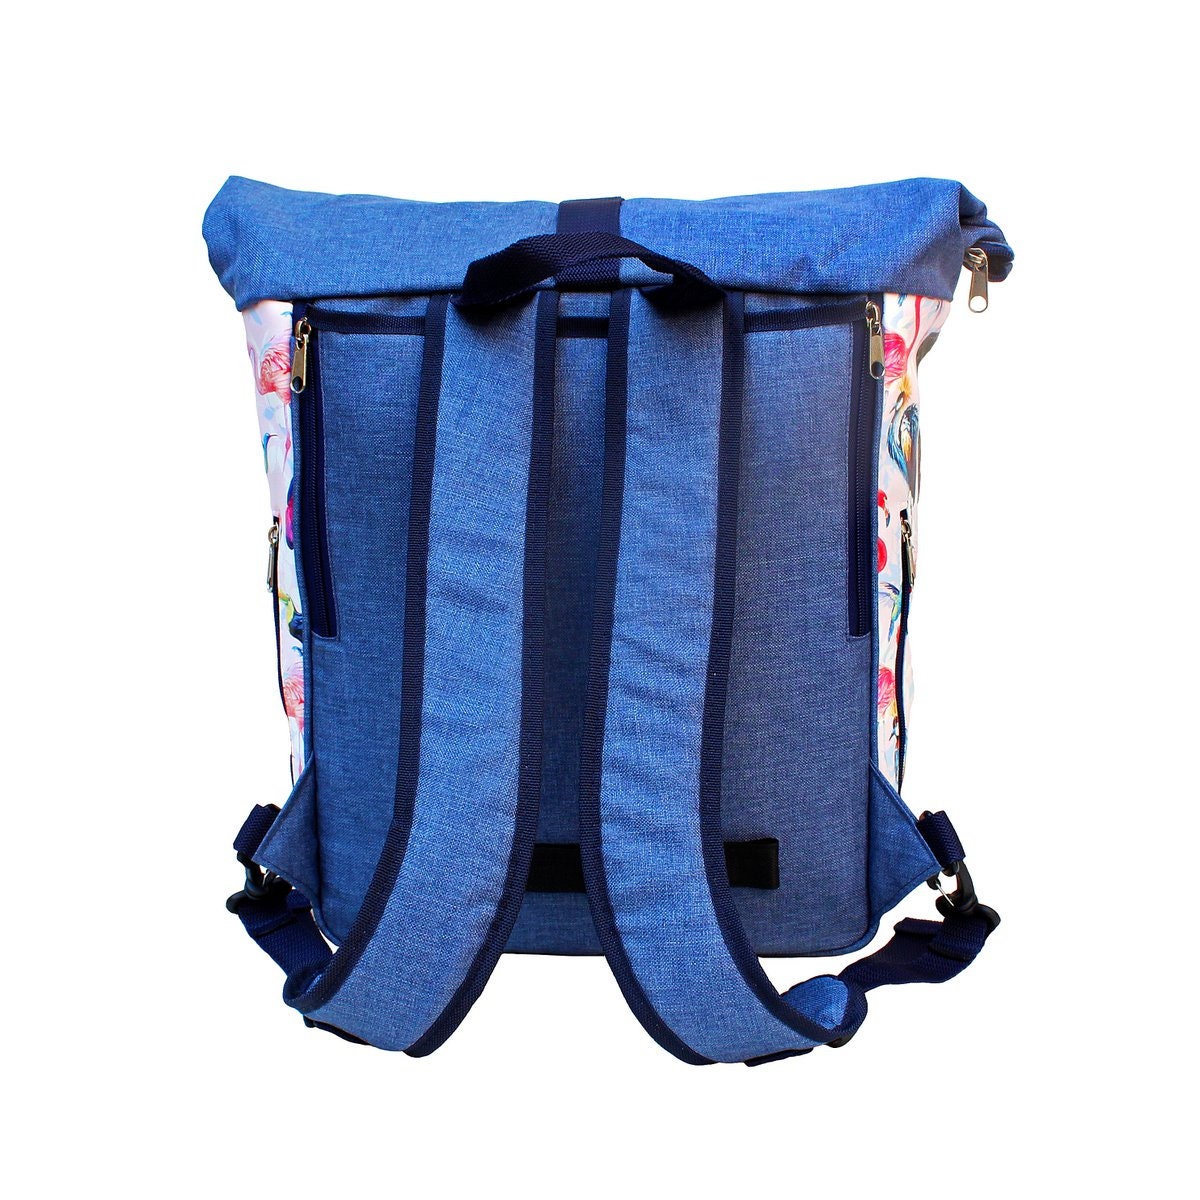 IKURI KOMBI Fahrradtasche / Rucksack mit Befestigung Wasserdicht Gepäcktasche Satteltasche Design Pajaros